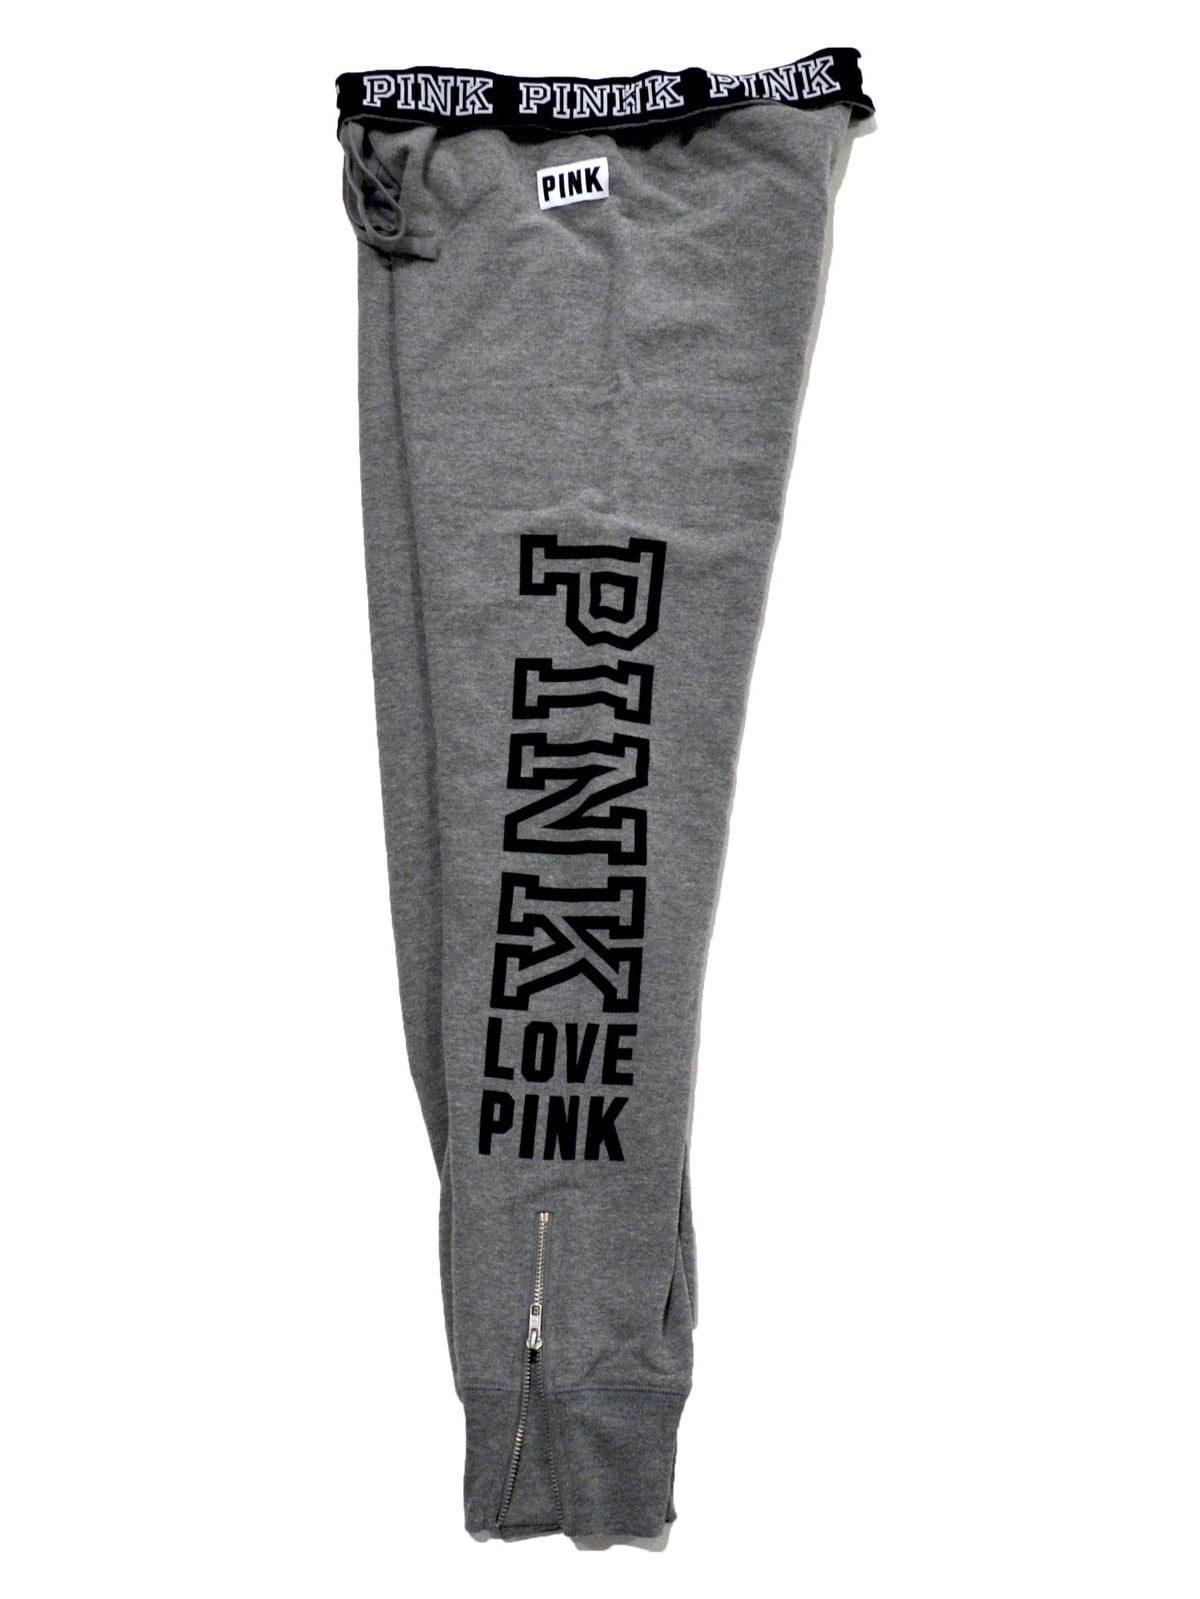 Victoria's Secret Pink Sweatpant Gym Pants (Large, Gray) 